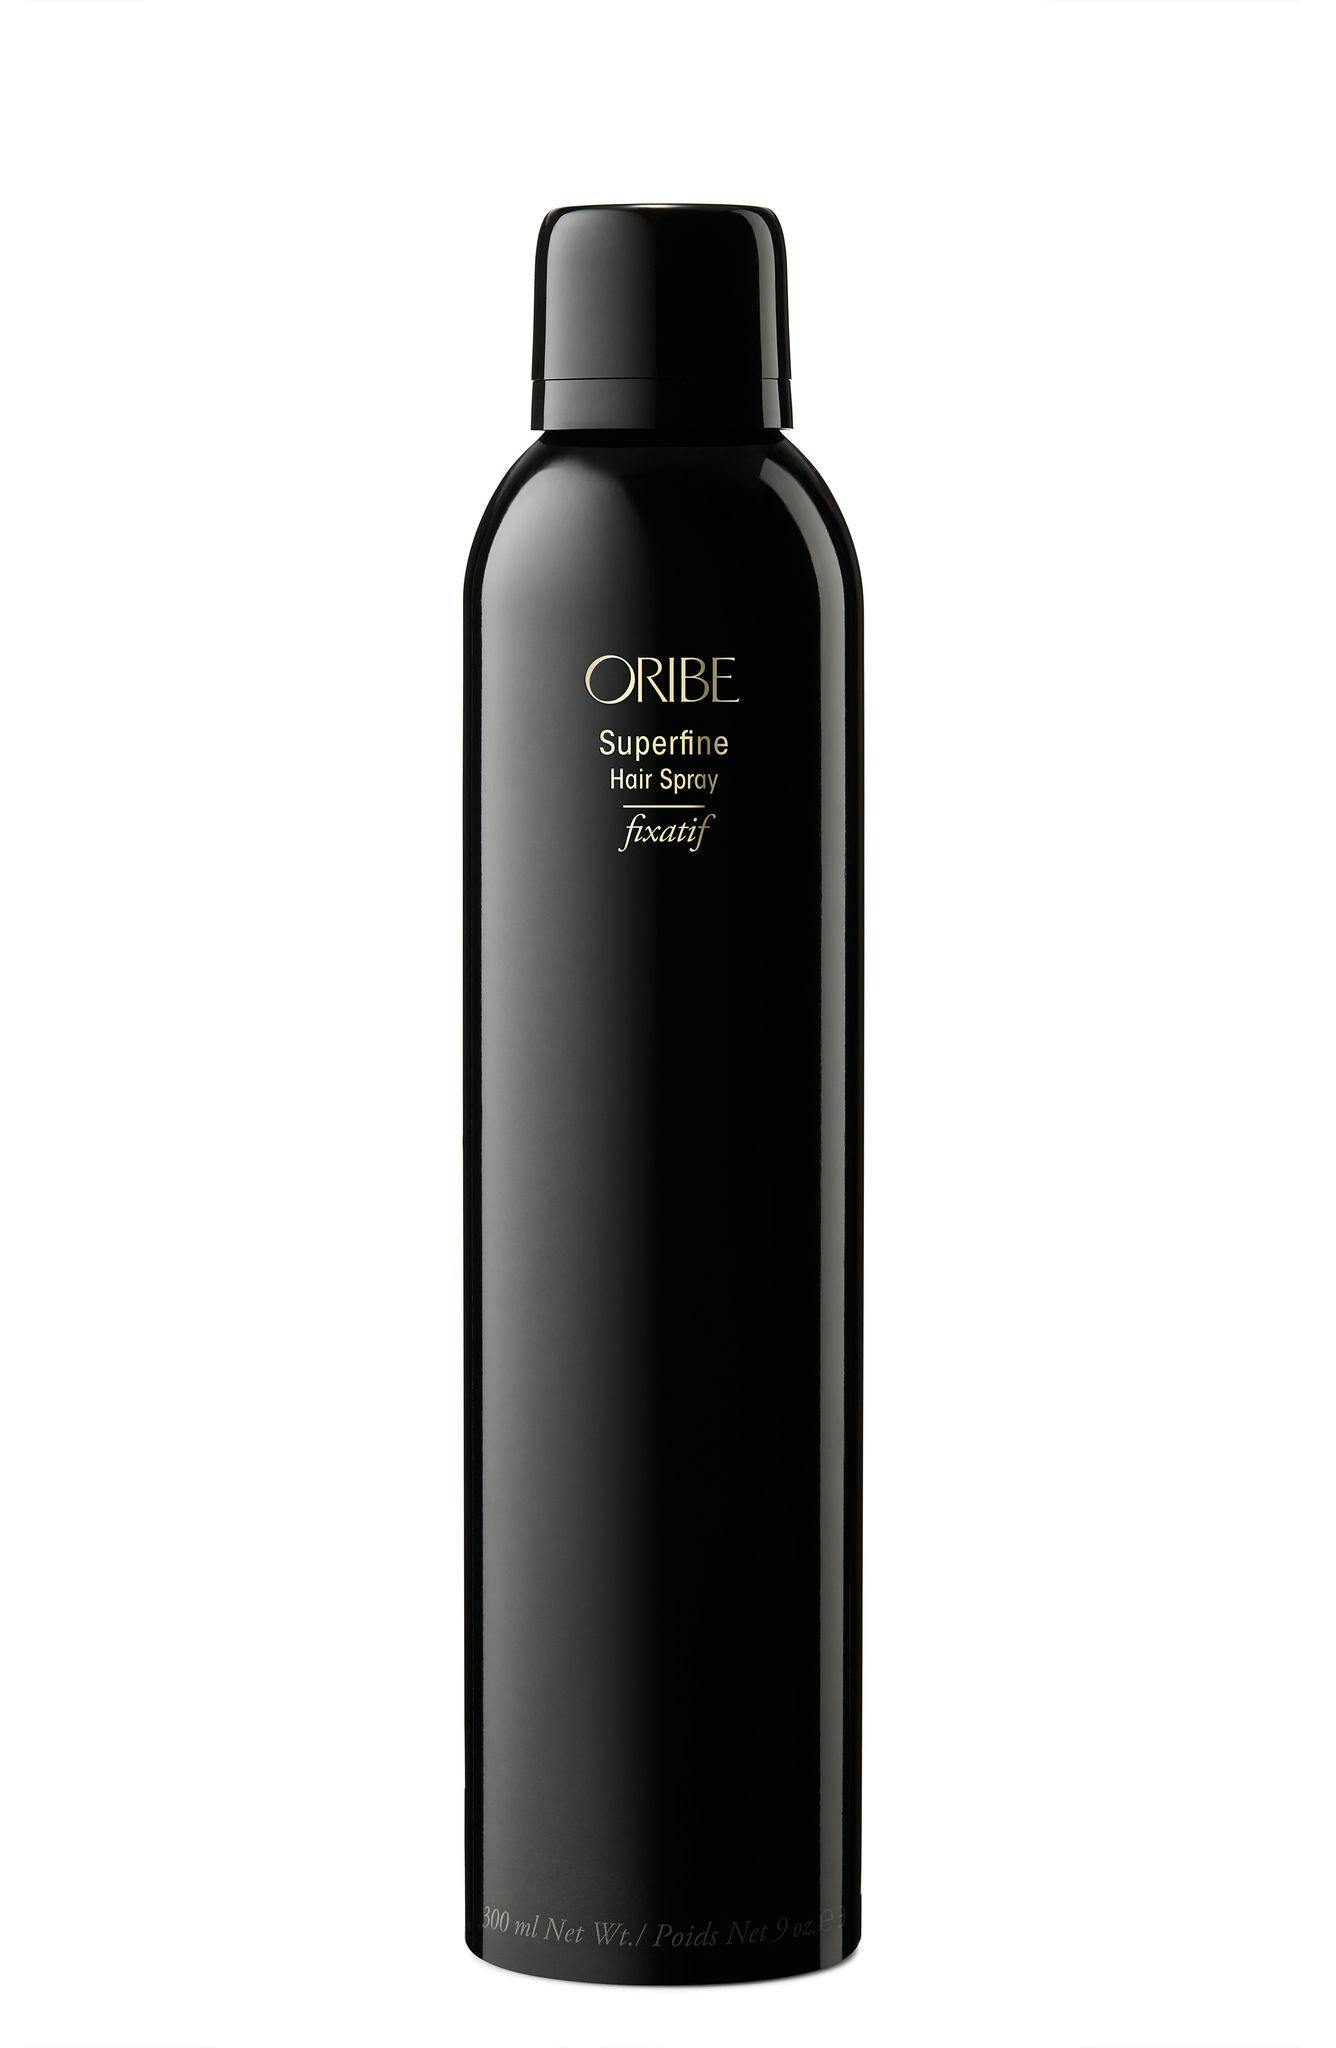 Oribe Superfine Hair Spray 301ml